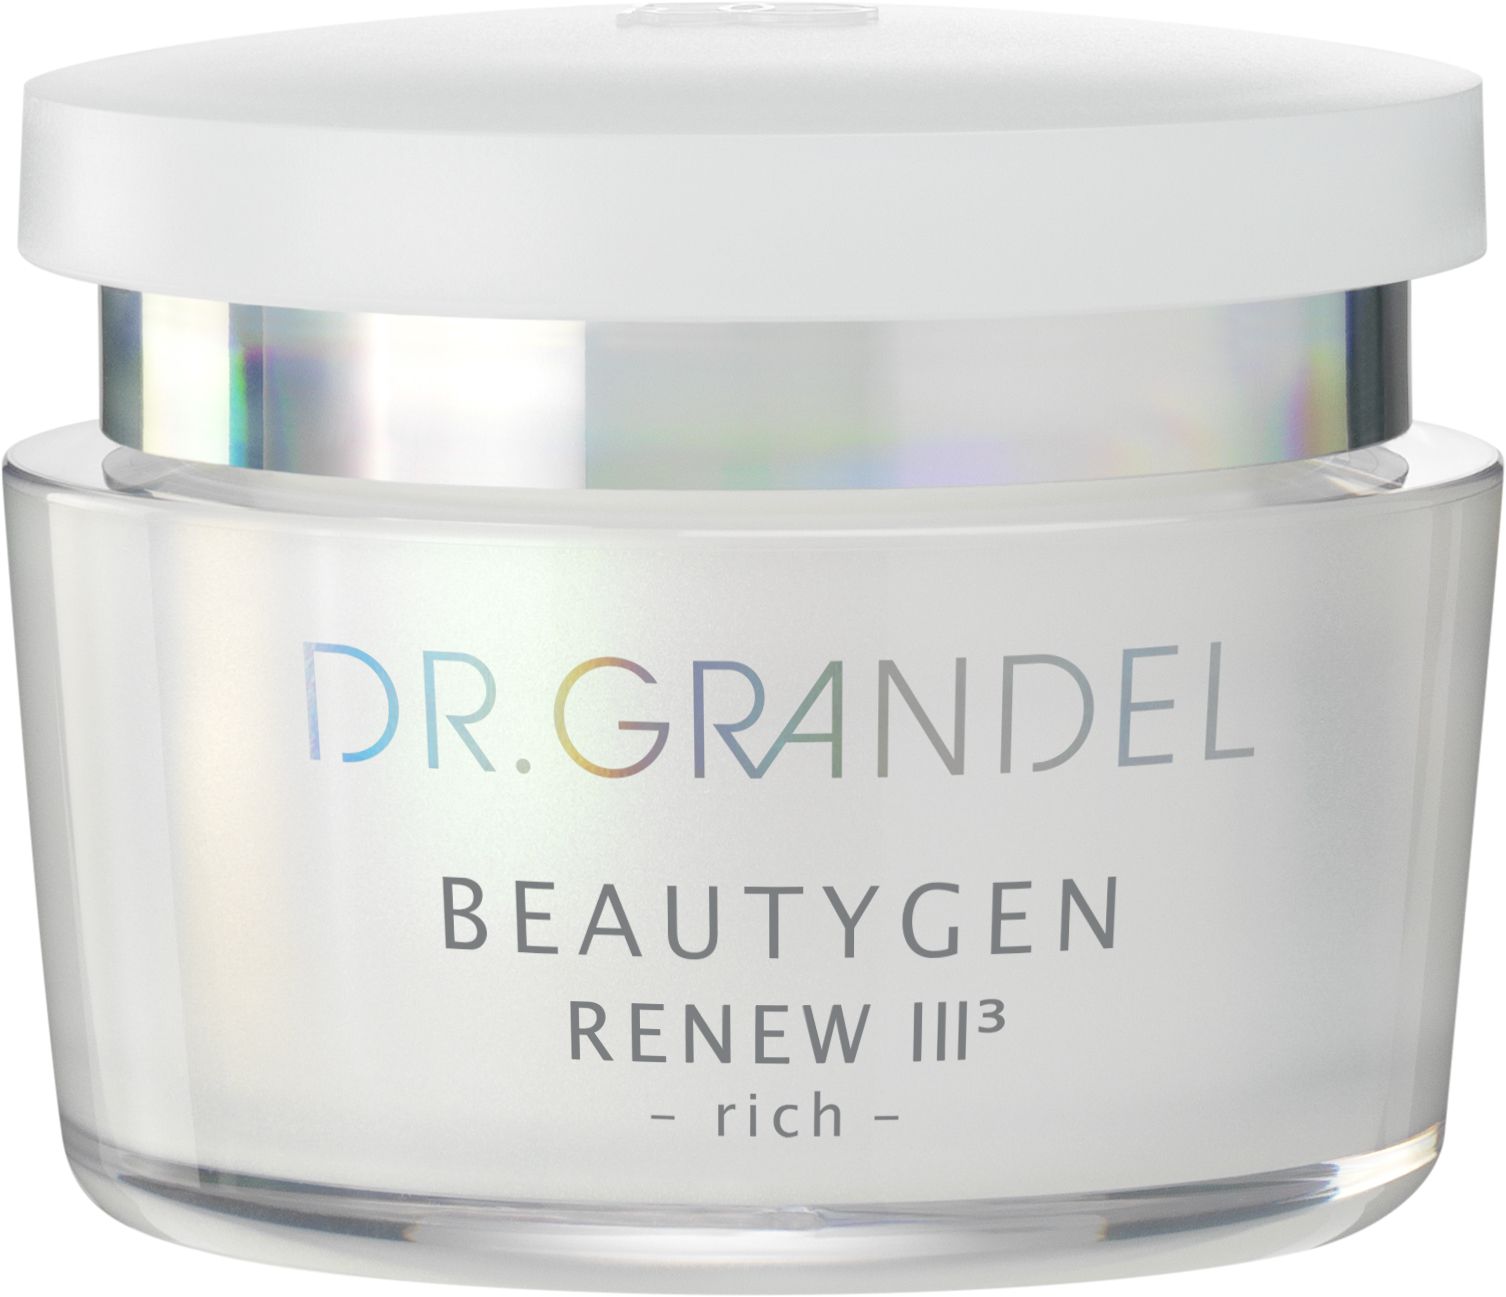 GRANDEL Beautygen Renew III Creme